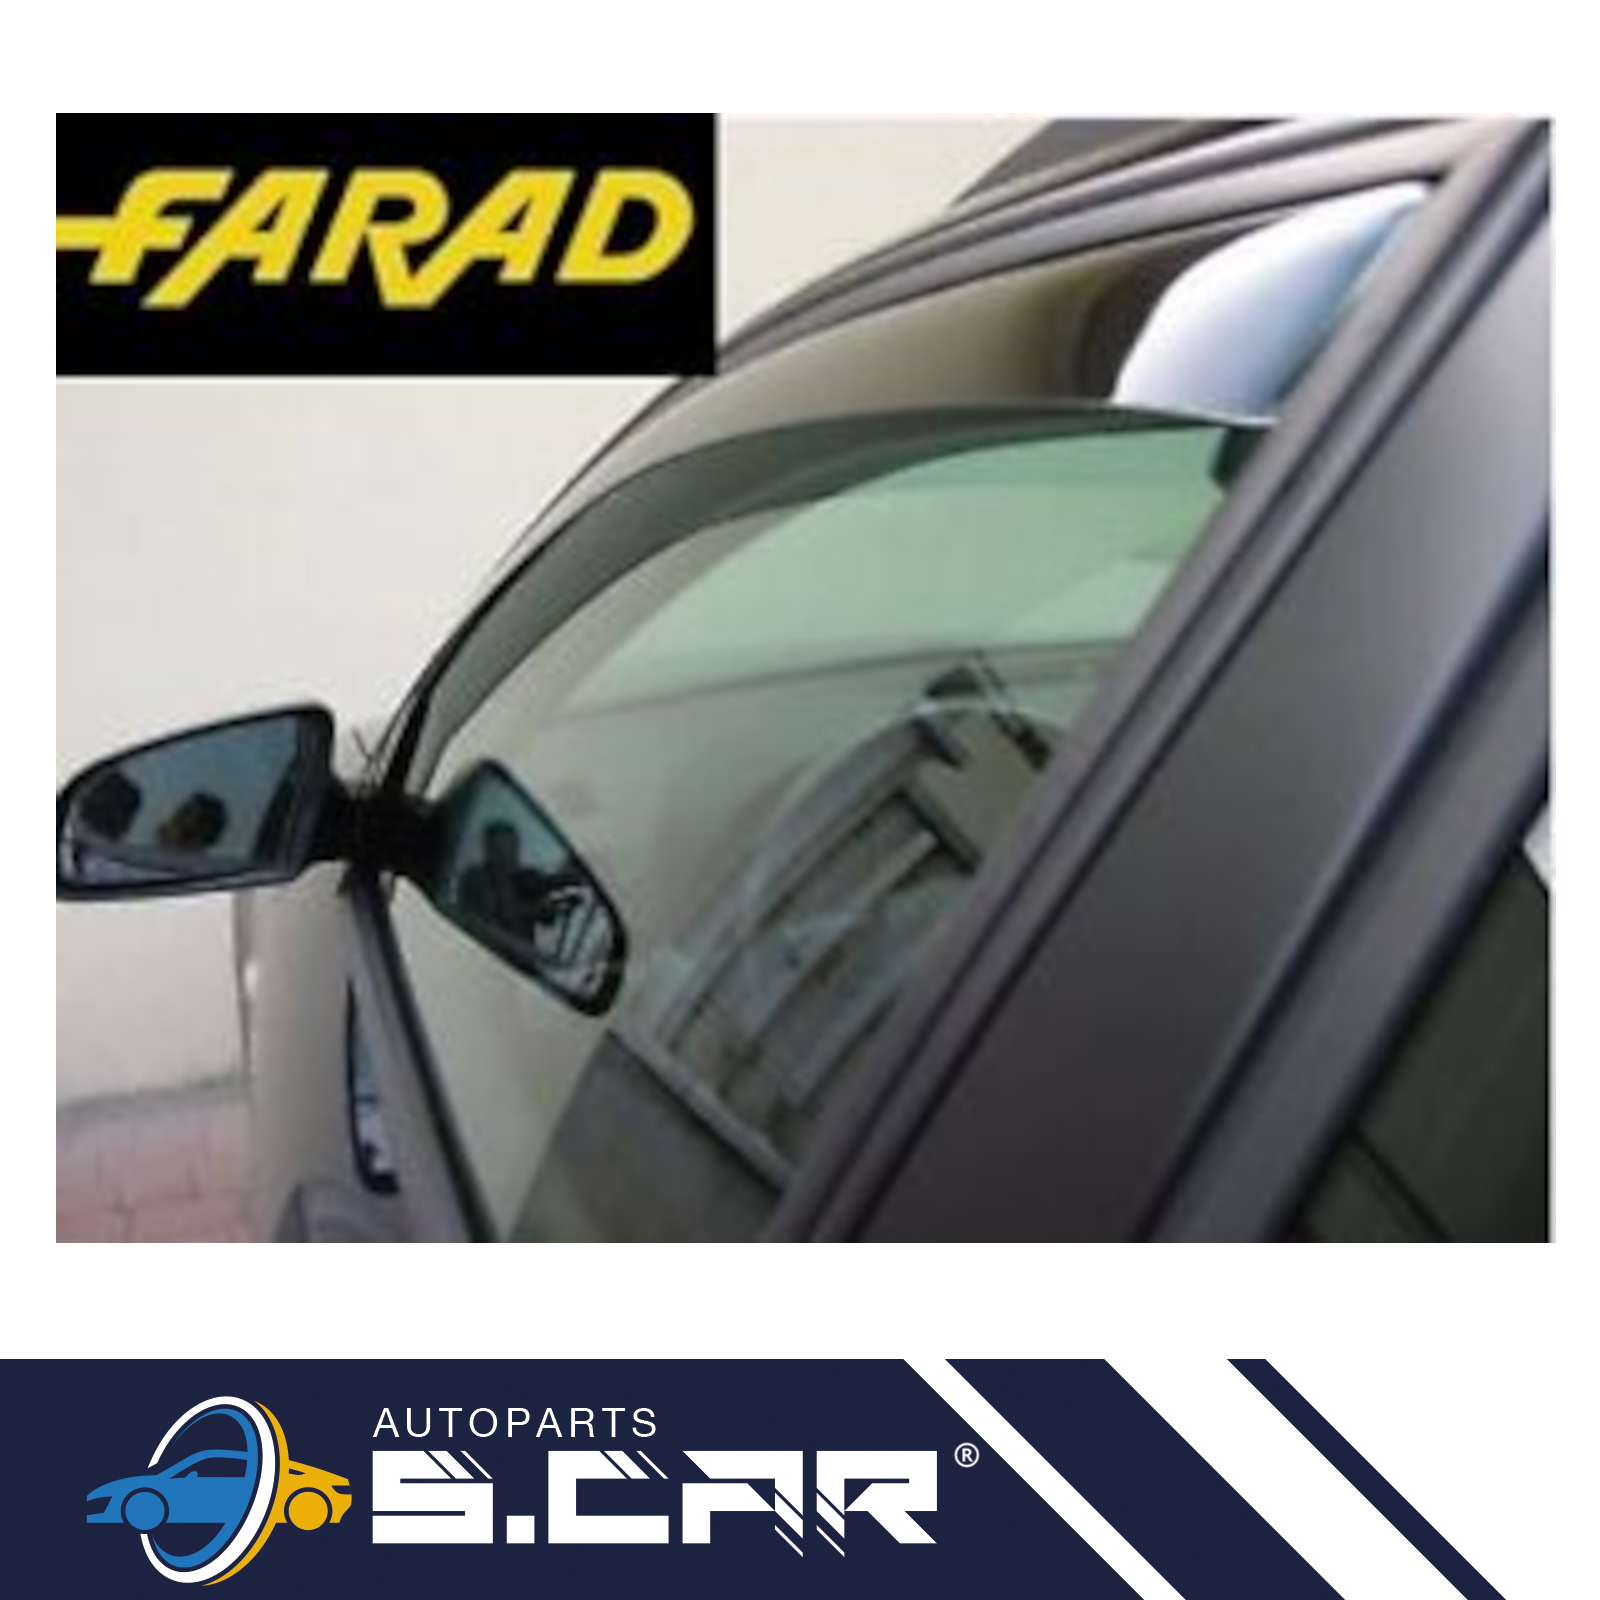 FARAD-2-Deflettori-Aria-Per-Dacia-Duster-2018-Antiturbo-Antivento-Fume-14196M-285609109259-7